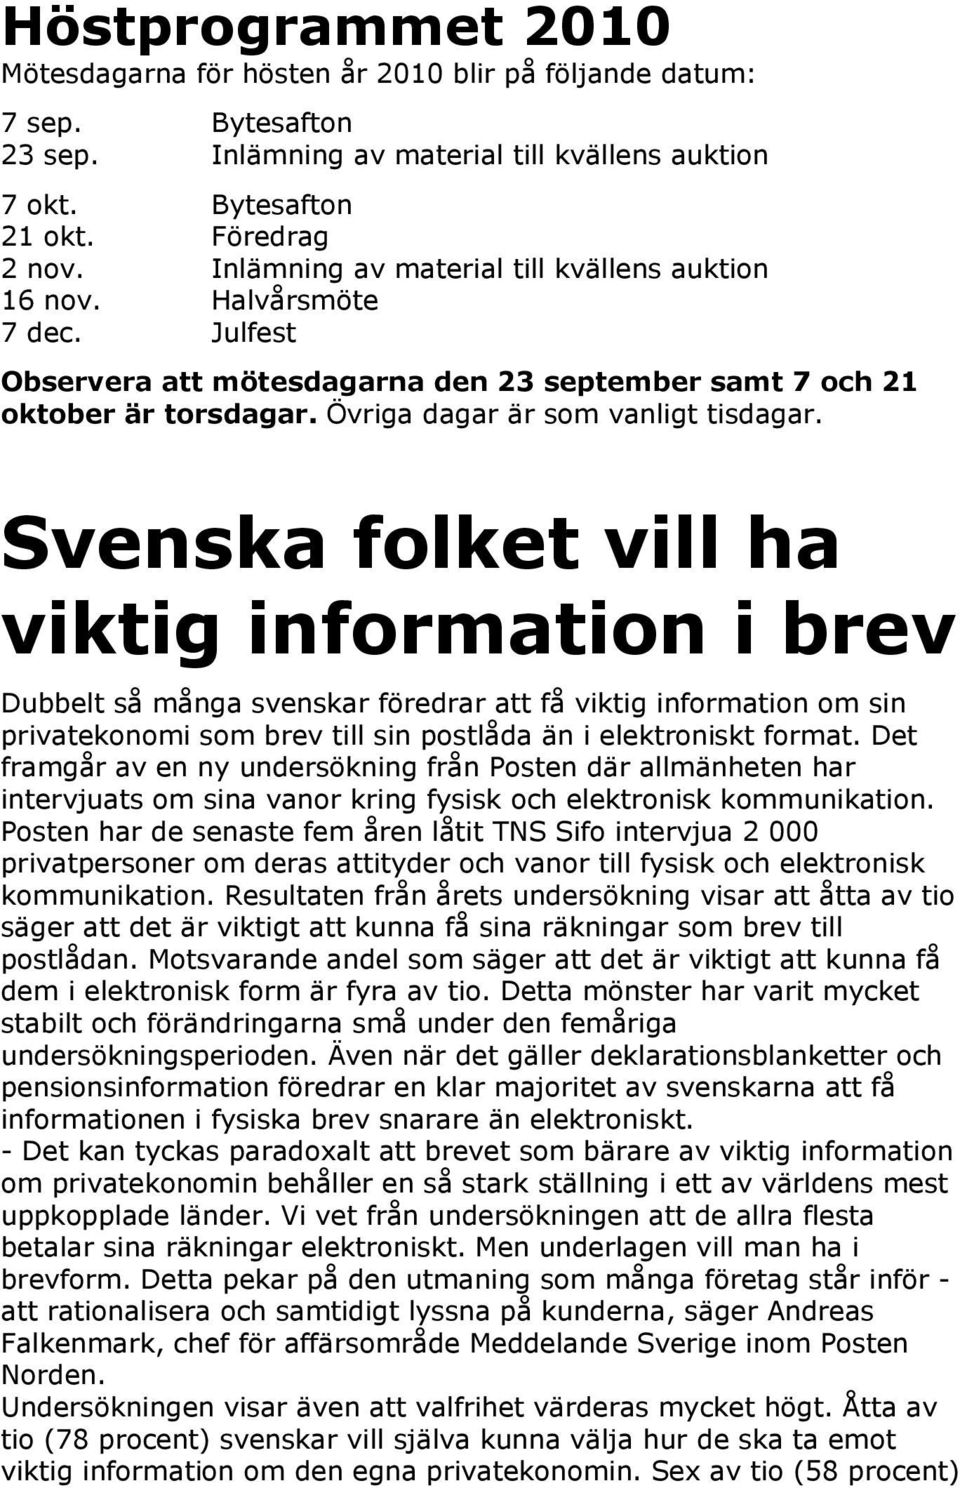 Svenska folket vill ha viktig information i brev Dubbelt så många svenskar föredrar att få viktig information om sin privatekonomi som brev till sin postlåda än i elektroniskt format.